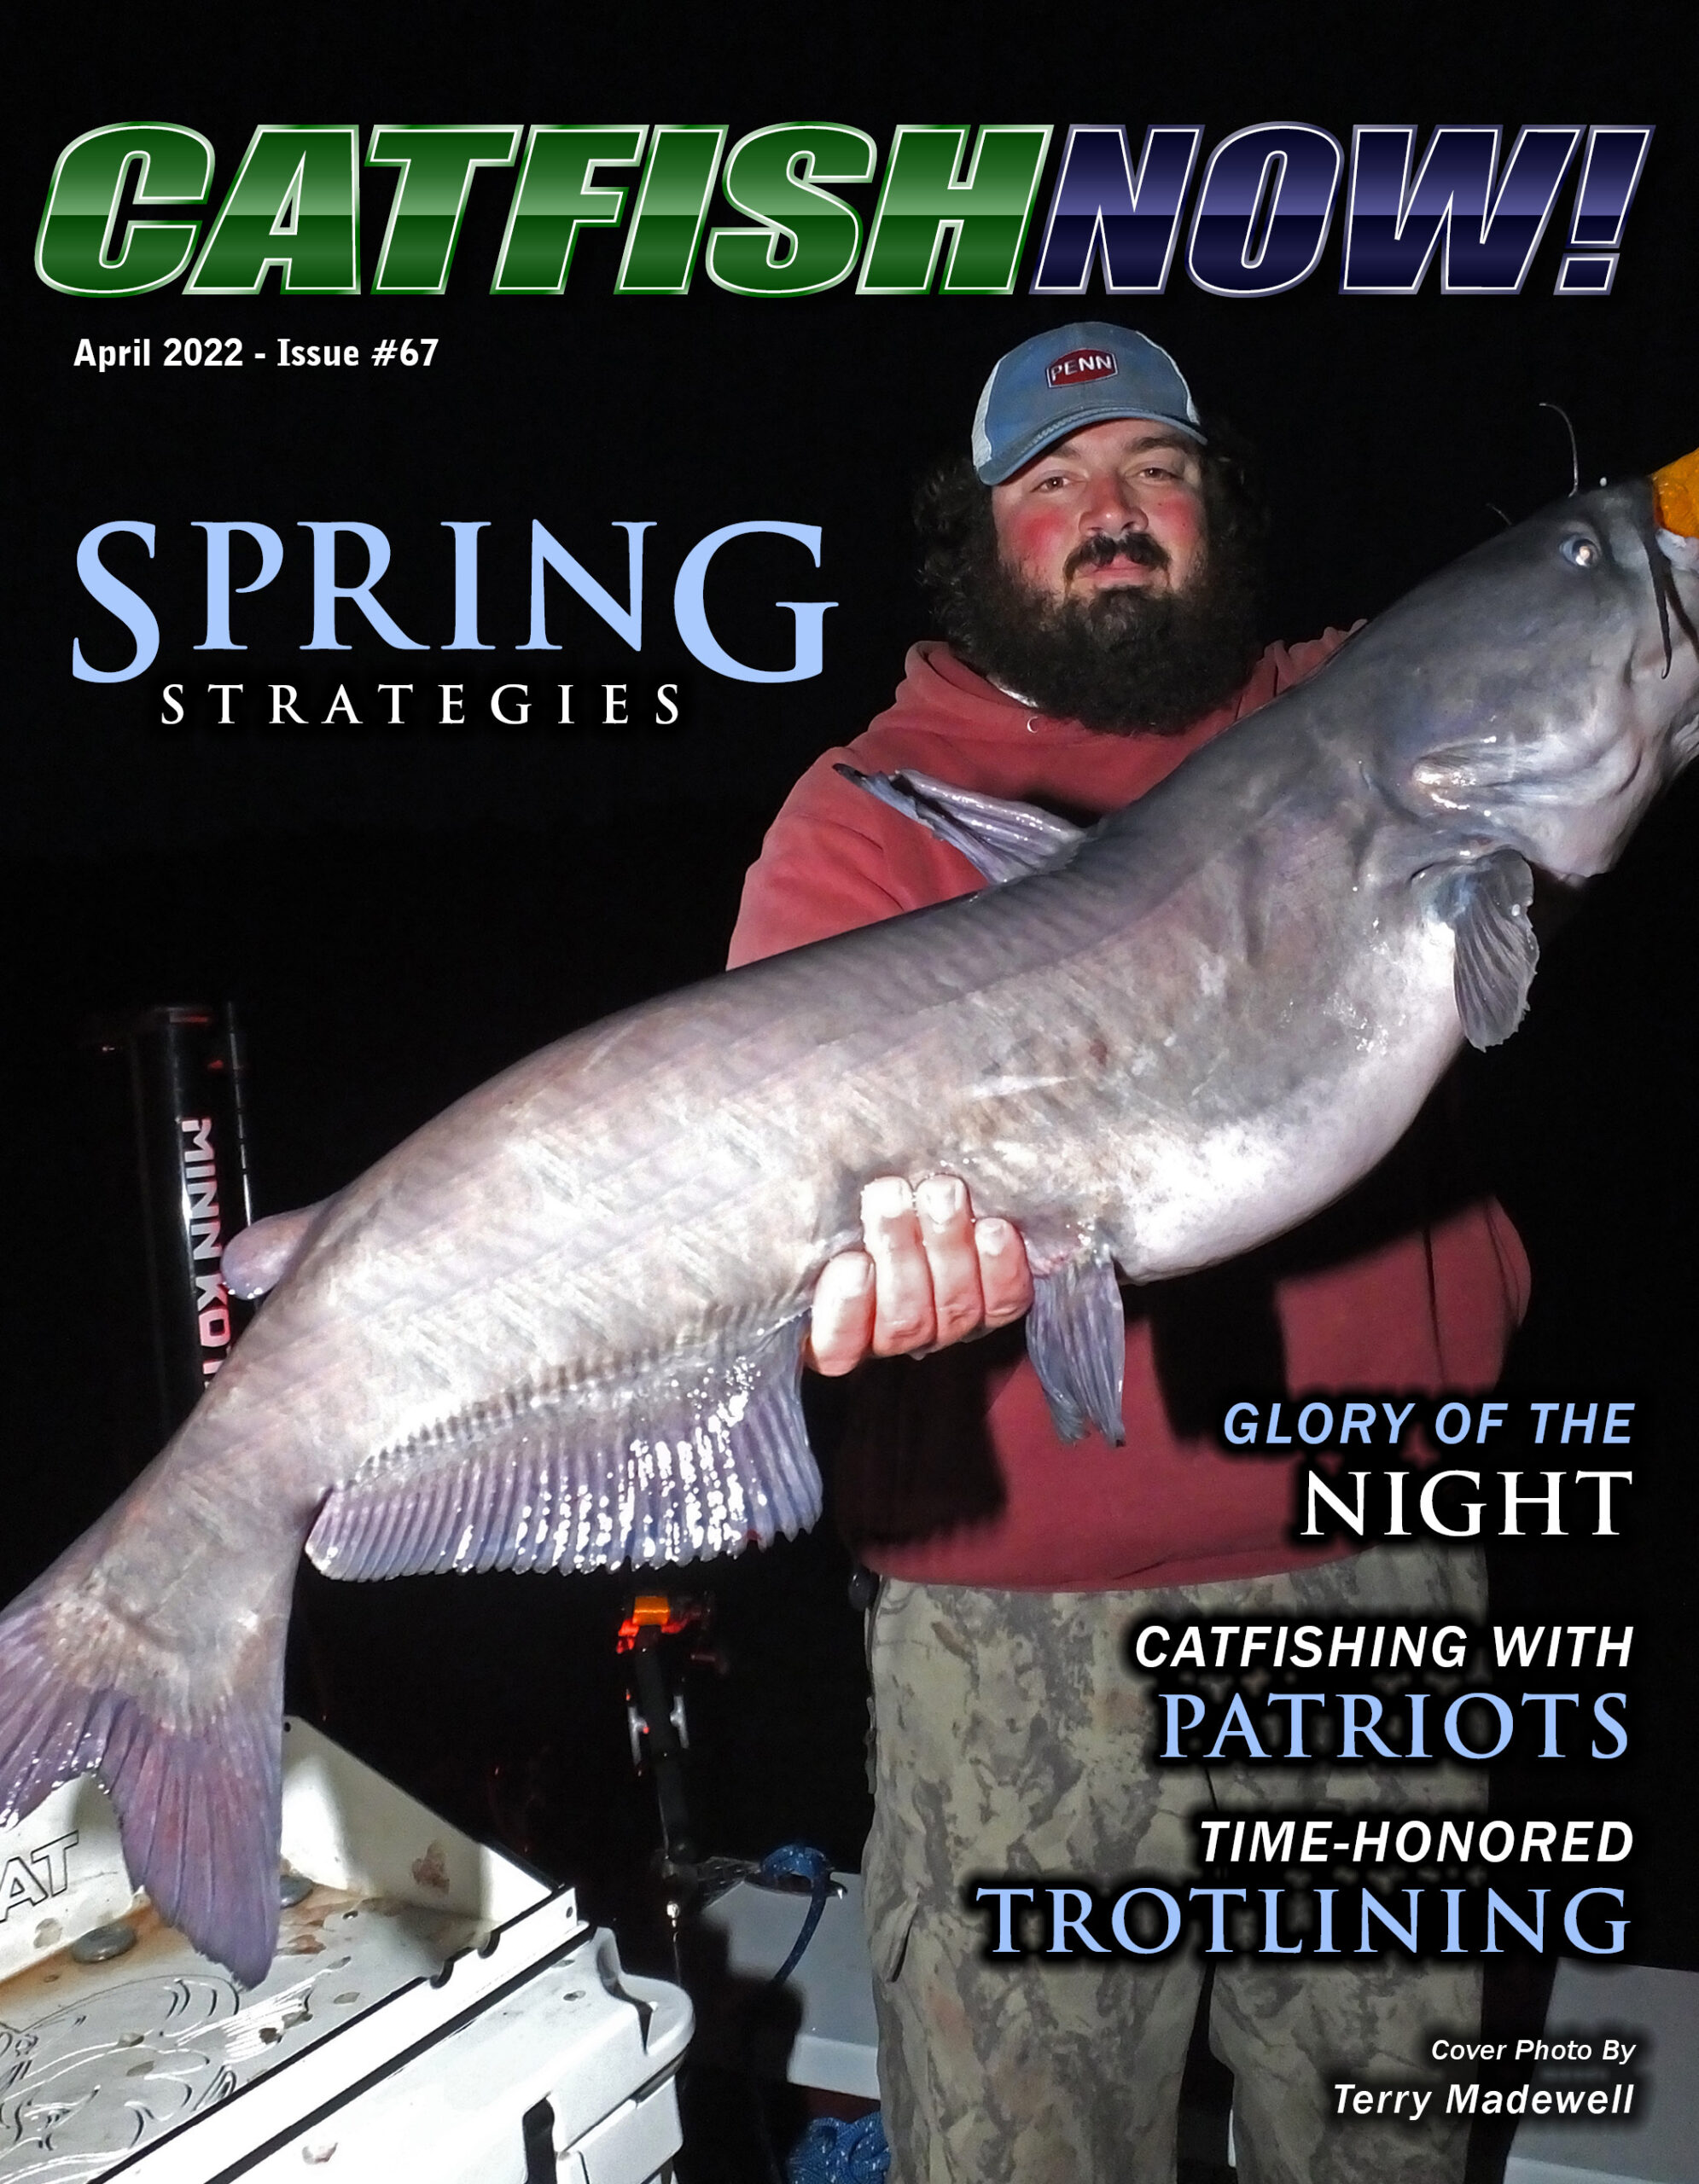 CatfishNow cover for April 2022